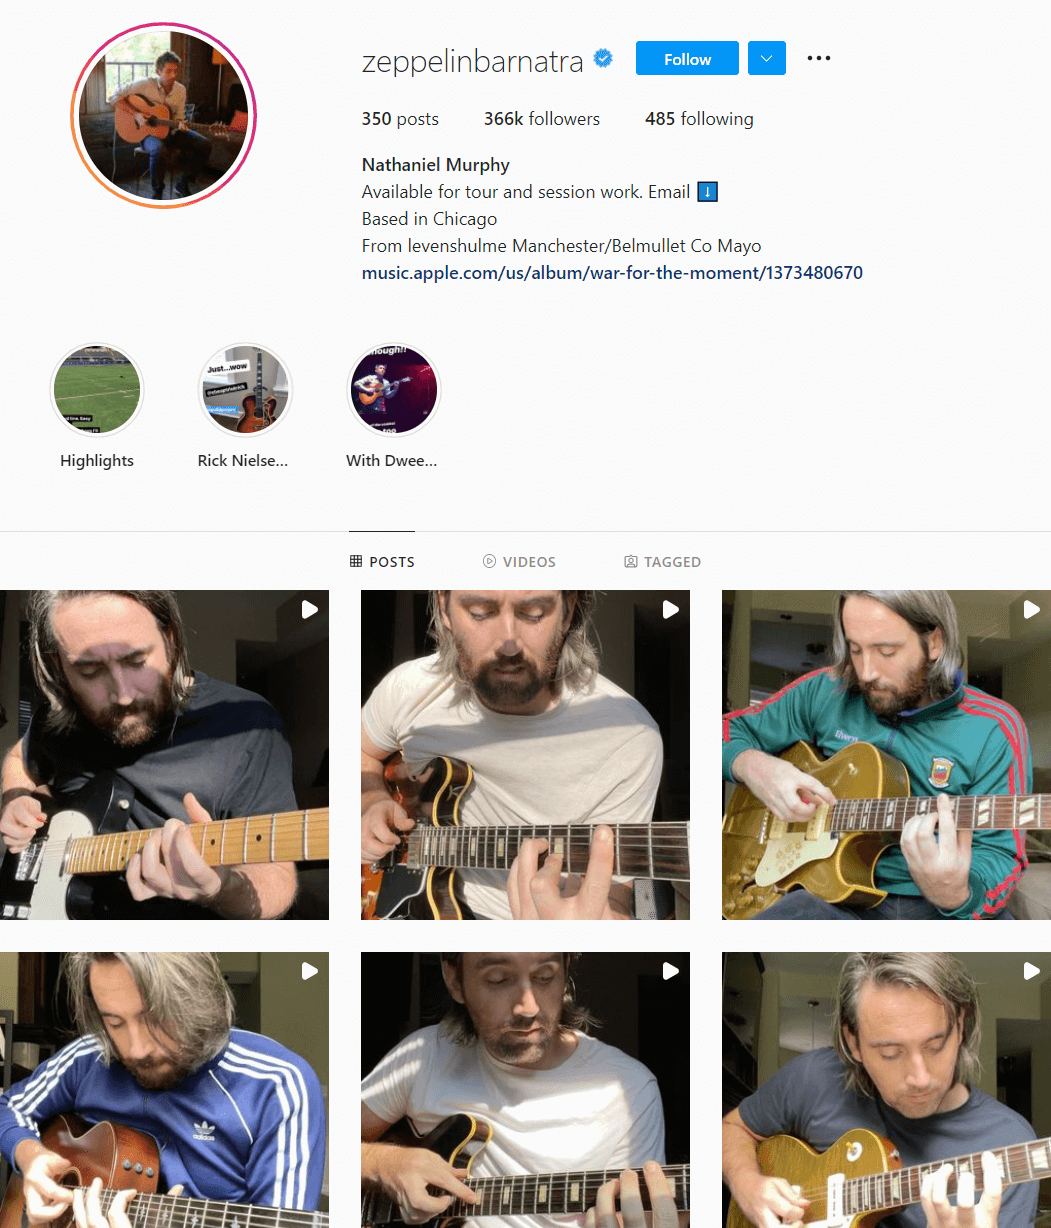 zeppelinbarnatra guitar Instagram account